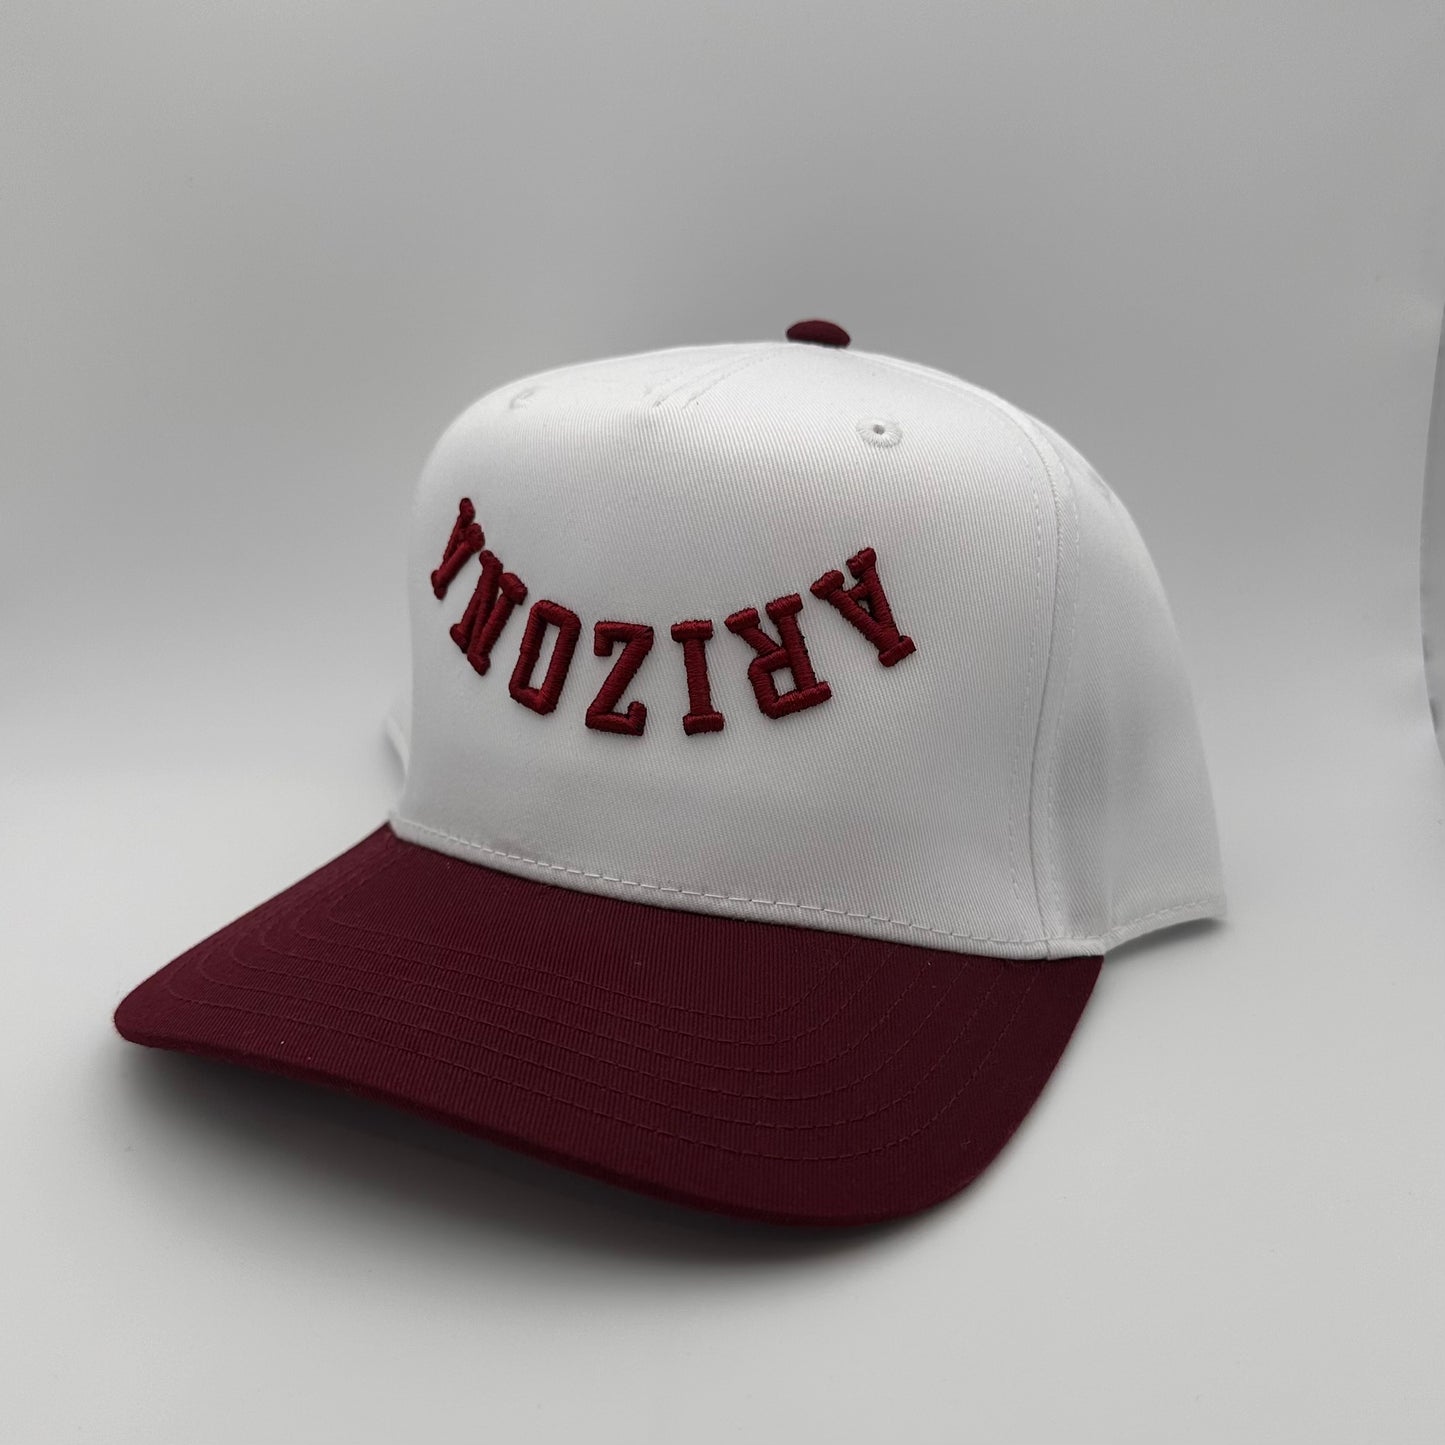 The Arizona Hat - White/Maroon